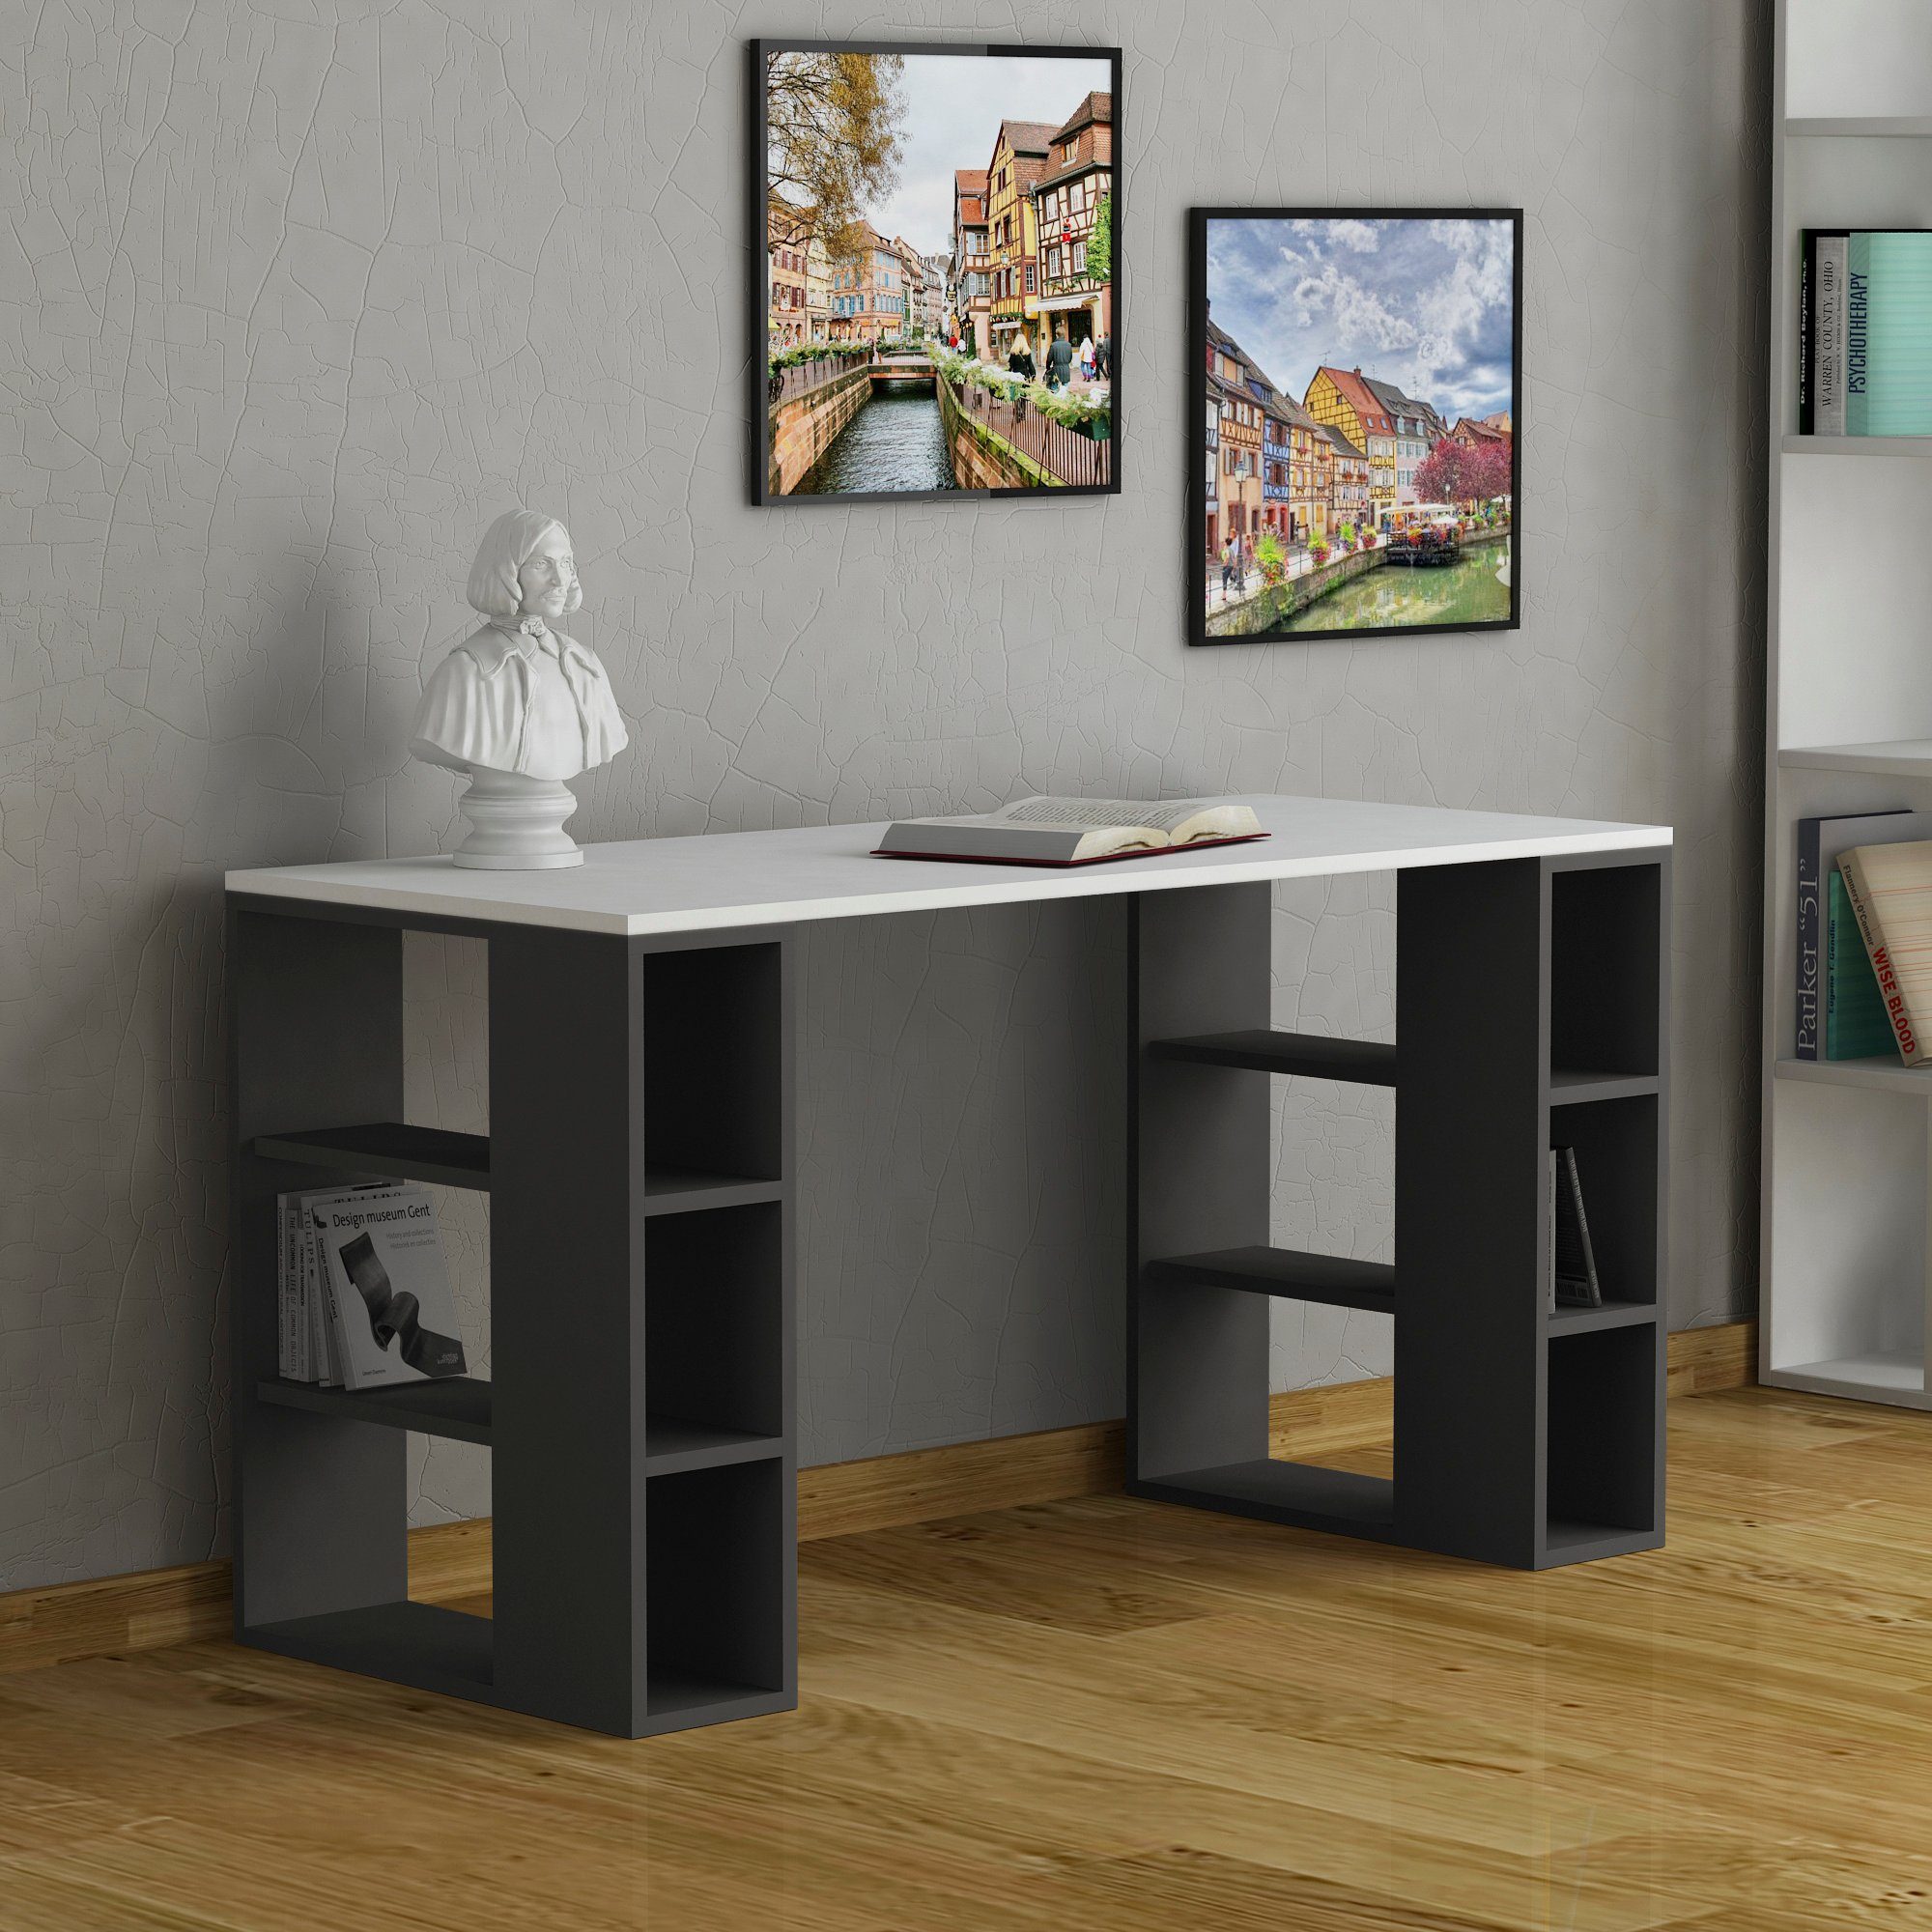 Decortie Schreibtisch Colmar (1 Tisch), Moderner Schreibtisch Mit Bücherregal, 140 x 60 x 75 cm weiß-anthrazit